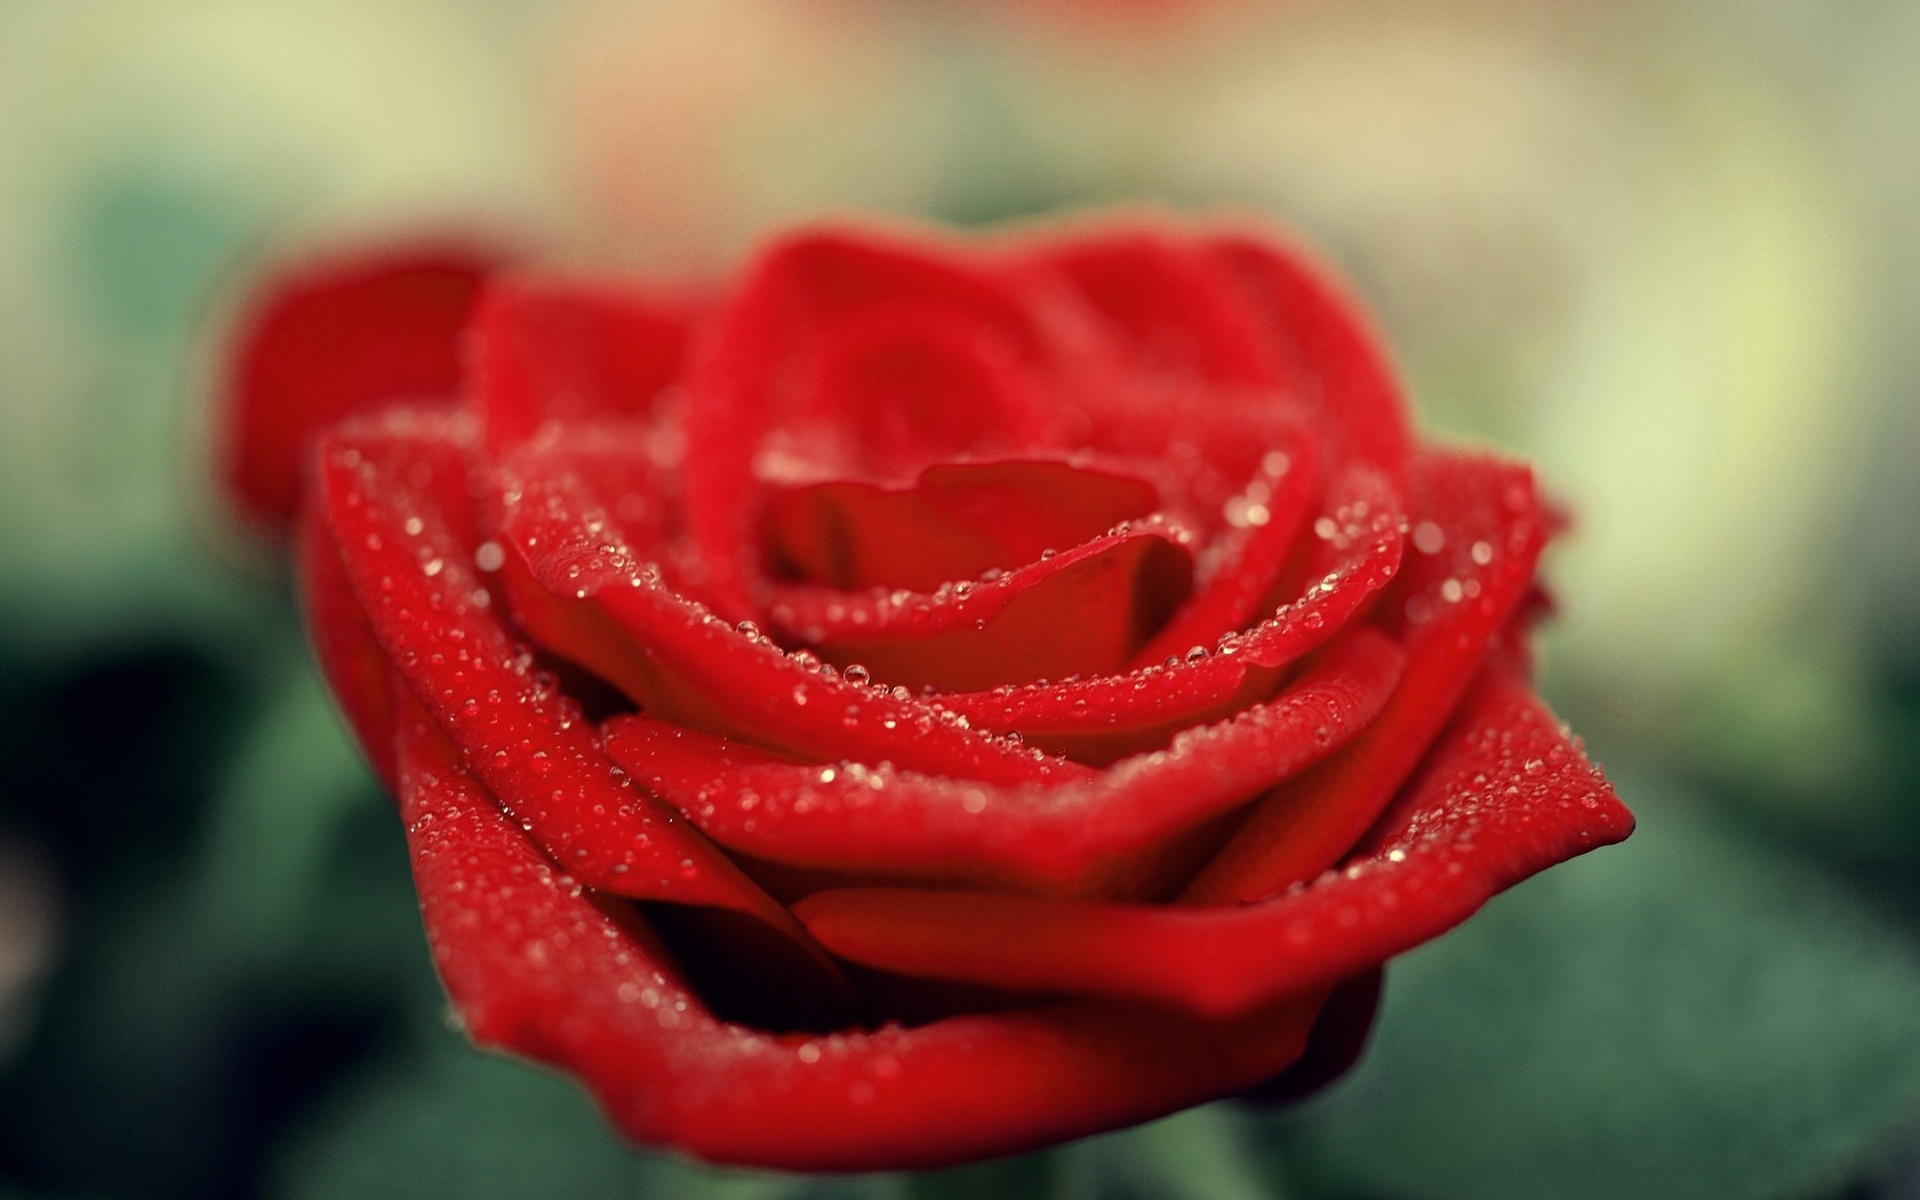 Magnifique rose rouge.jpg